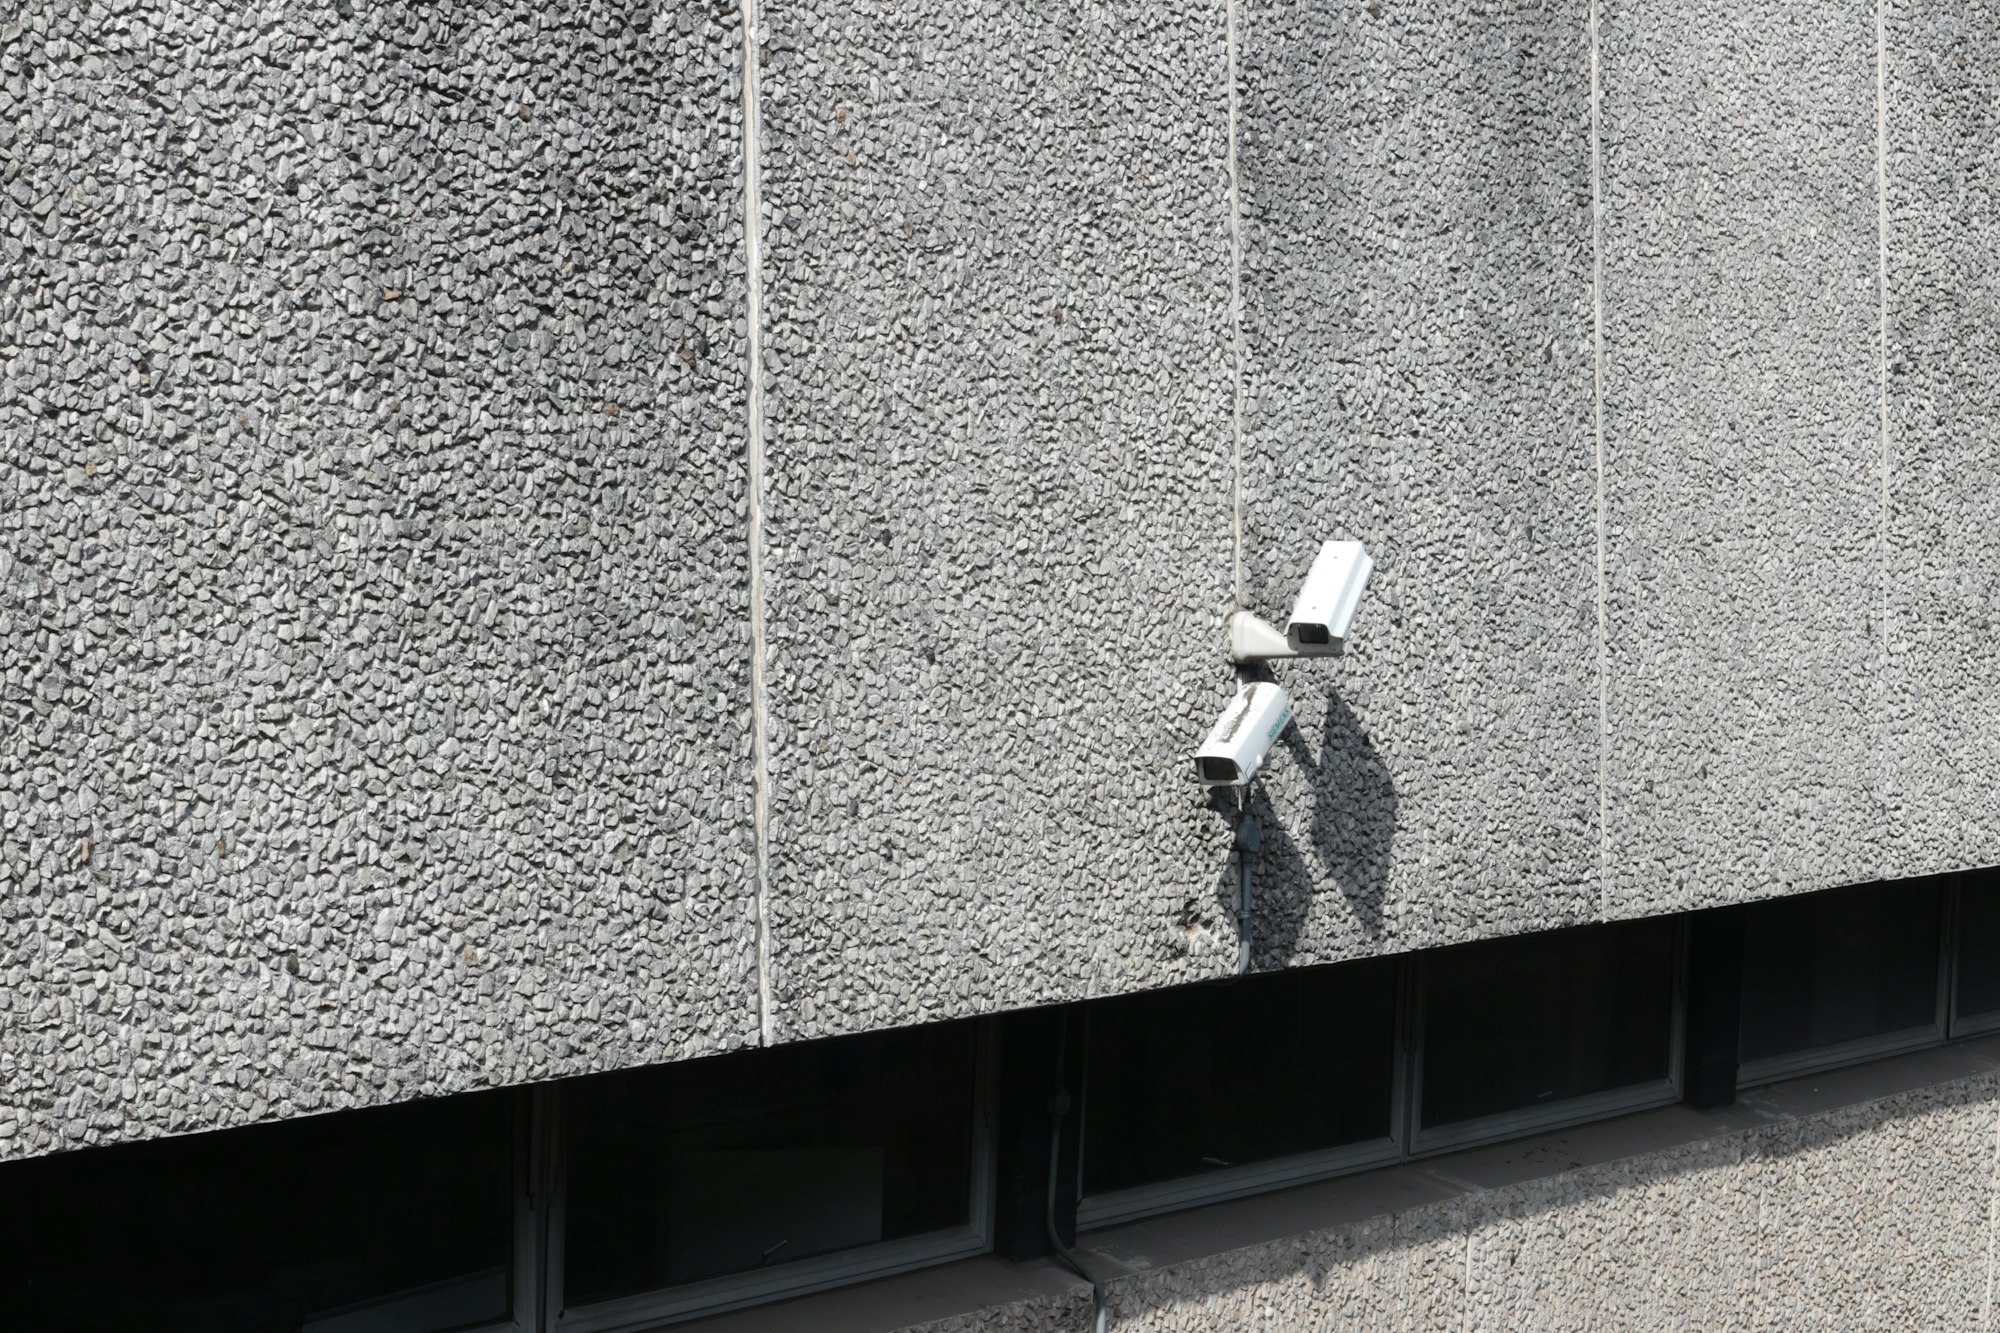 Уязвимость в проводах камер видеонаблюдения позволяет дистанционно взломать их